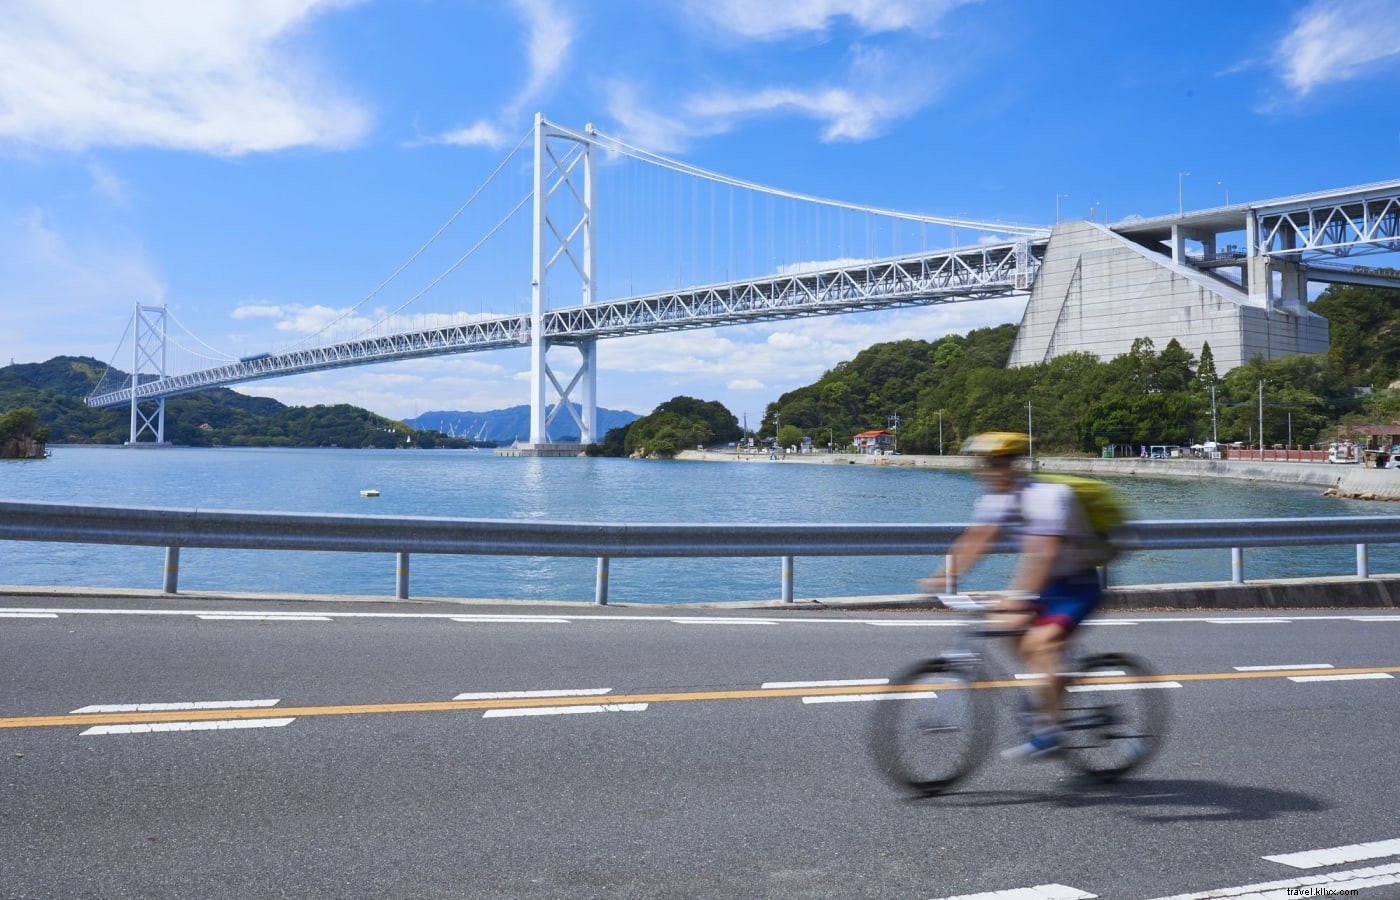 Le migliori destinazioni per tour in bicicletta e in bicicletta in Giappone 